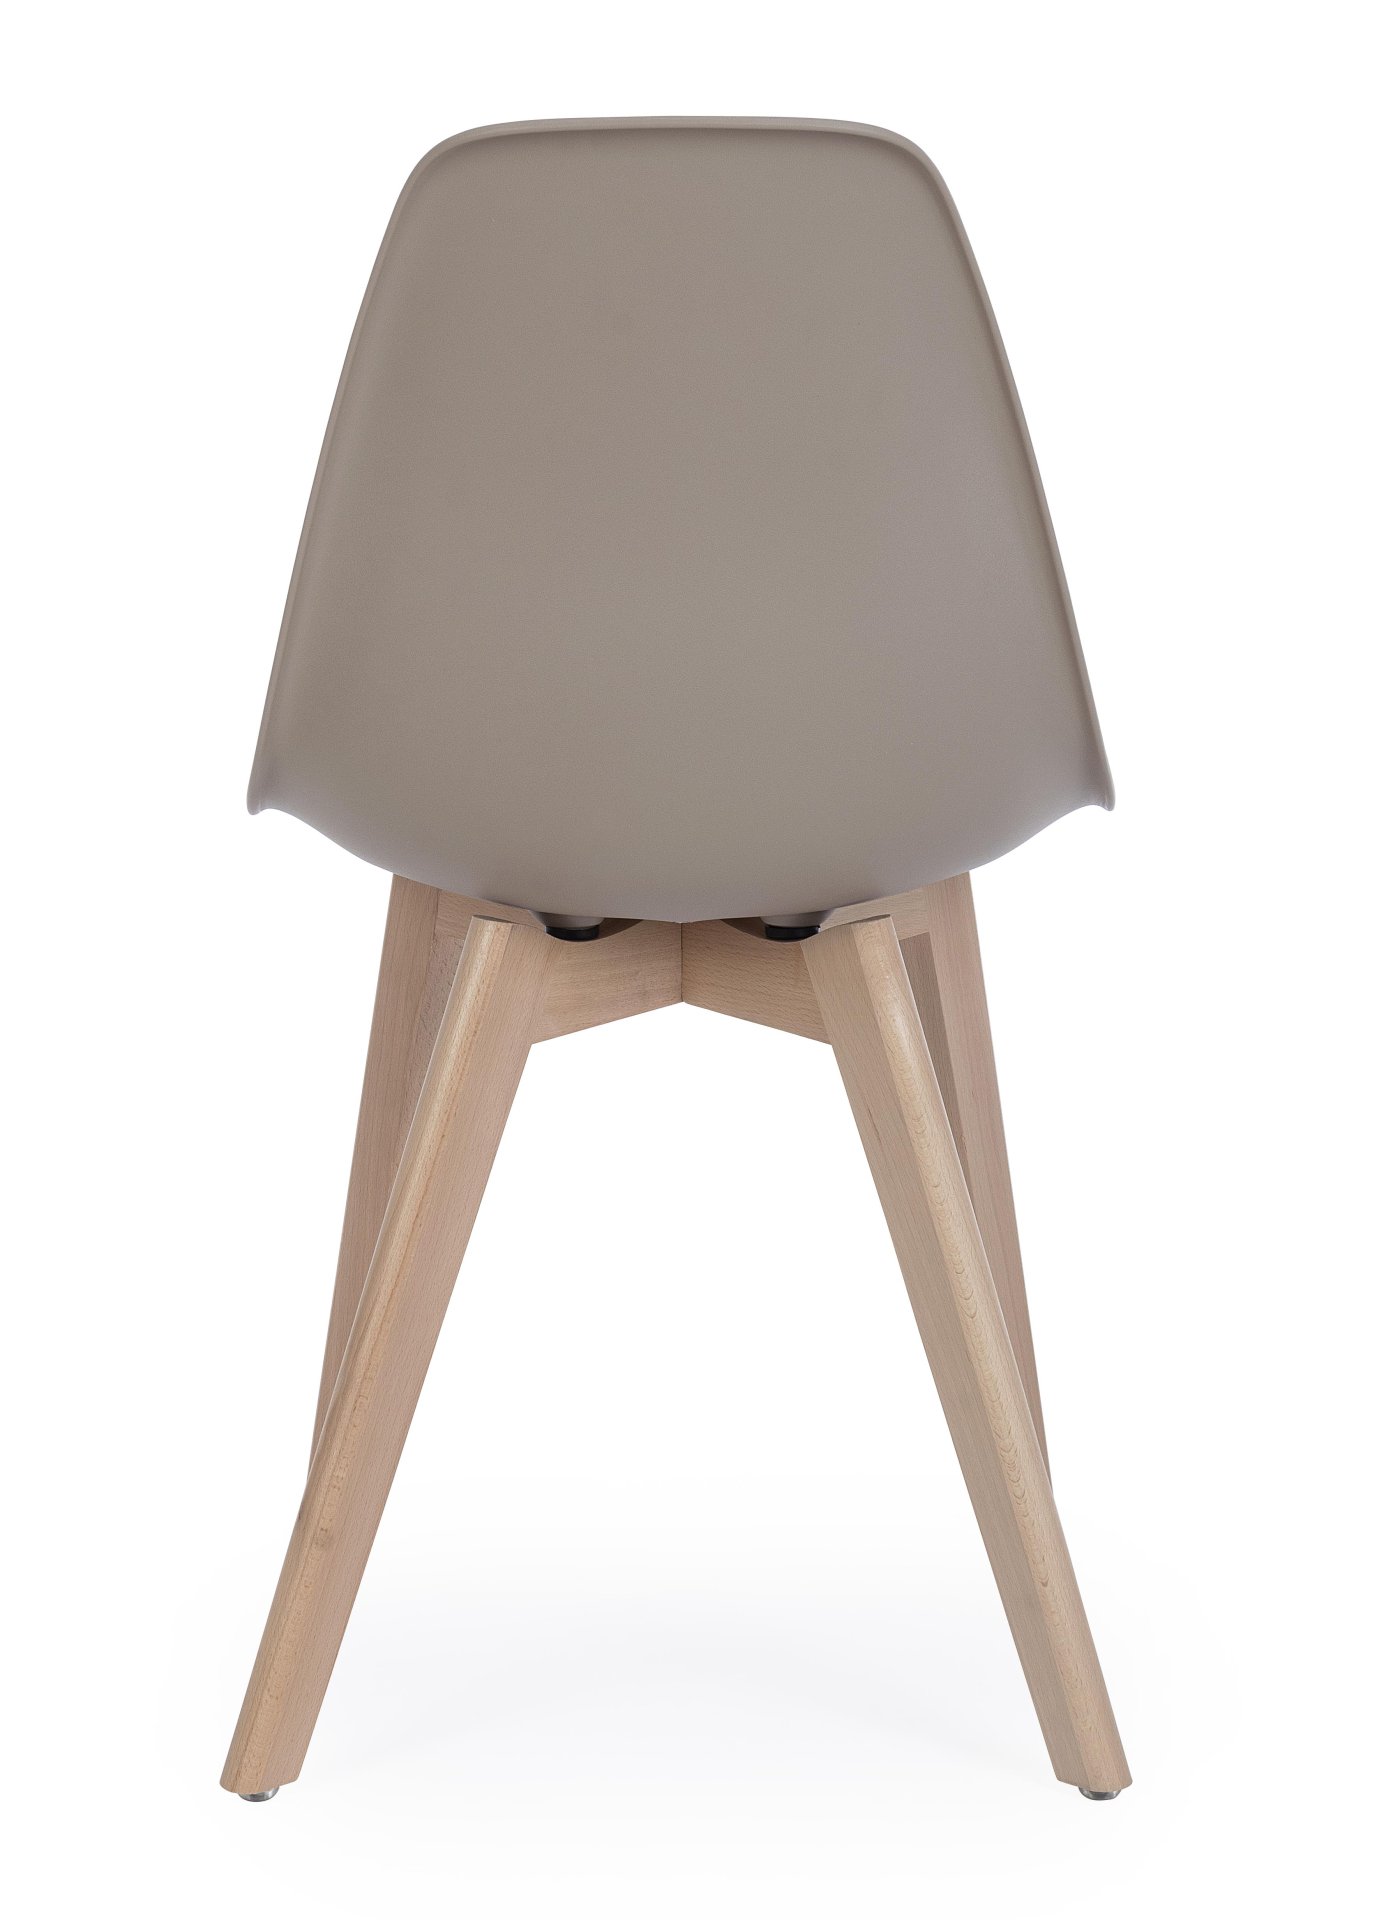 Der Stuhl System überzeugt mit seinem modernem Design. Gefertigt wurde der Stuhl aus Kunststoff, welcher einen Taupe Farbton besitzt. Das Gestell ist aus Buchenholz. Die Sitzhöhe des Stuhls ist 46 cm